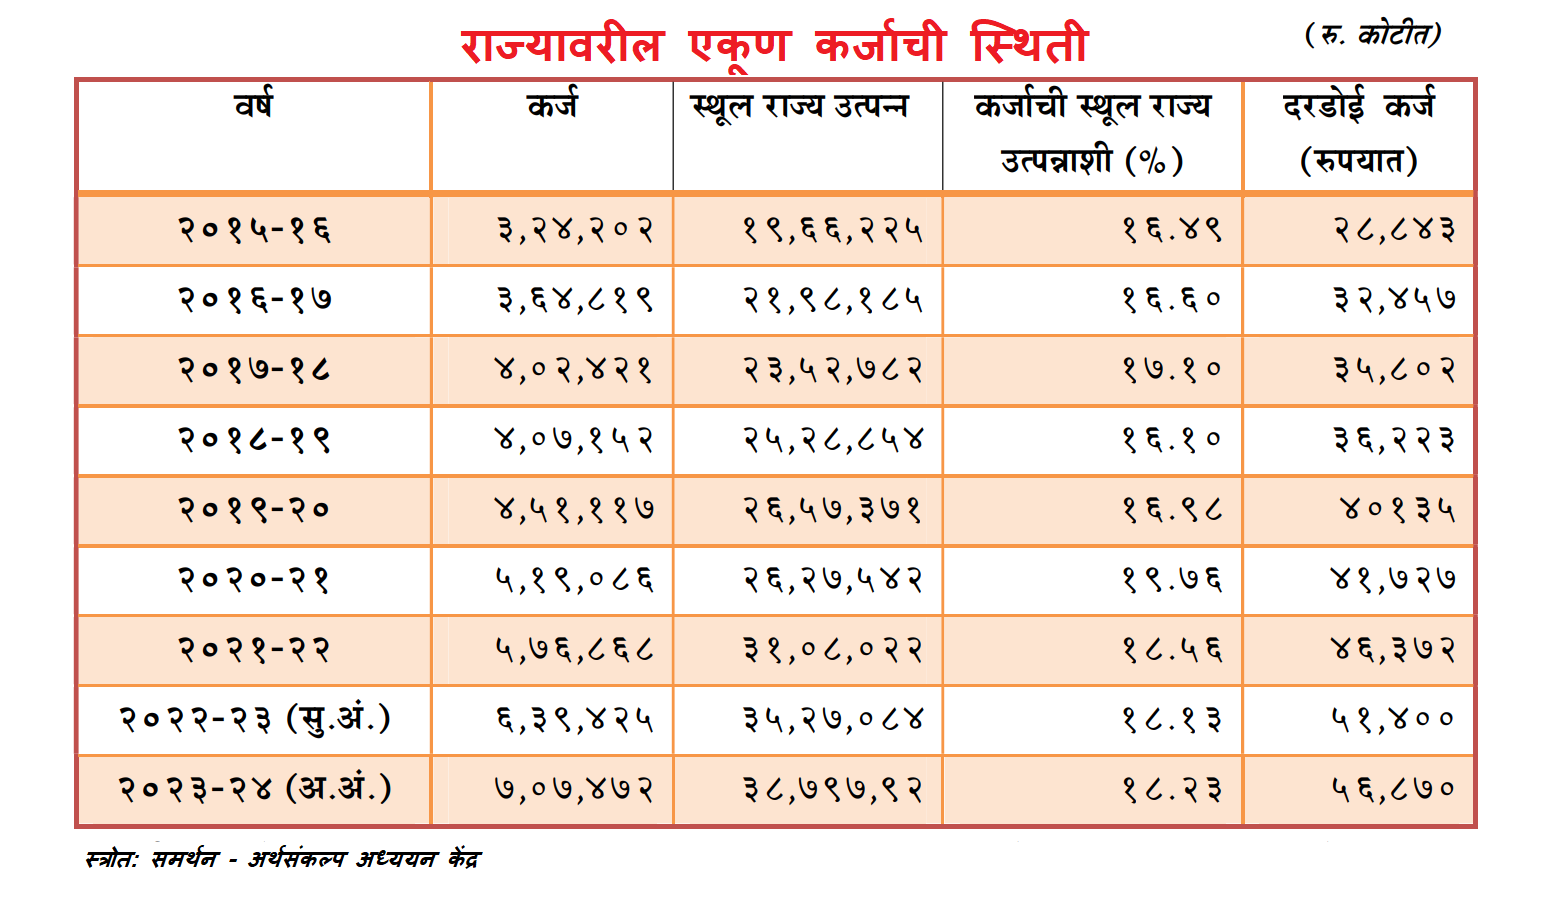 Maharashtra Loan Amount 2023-24